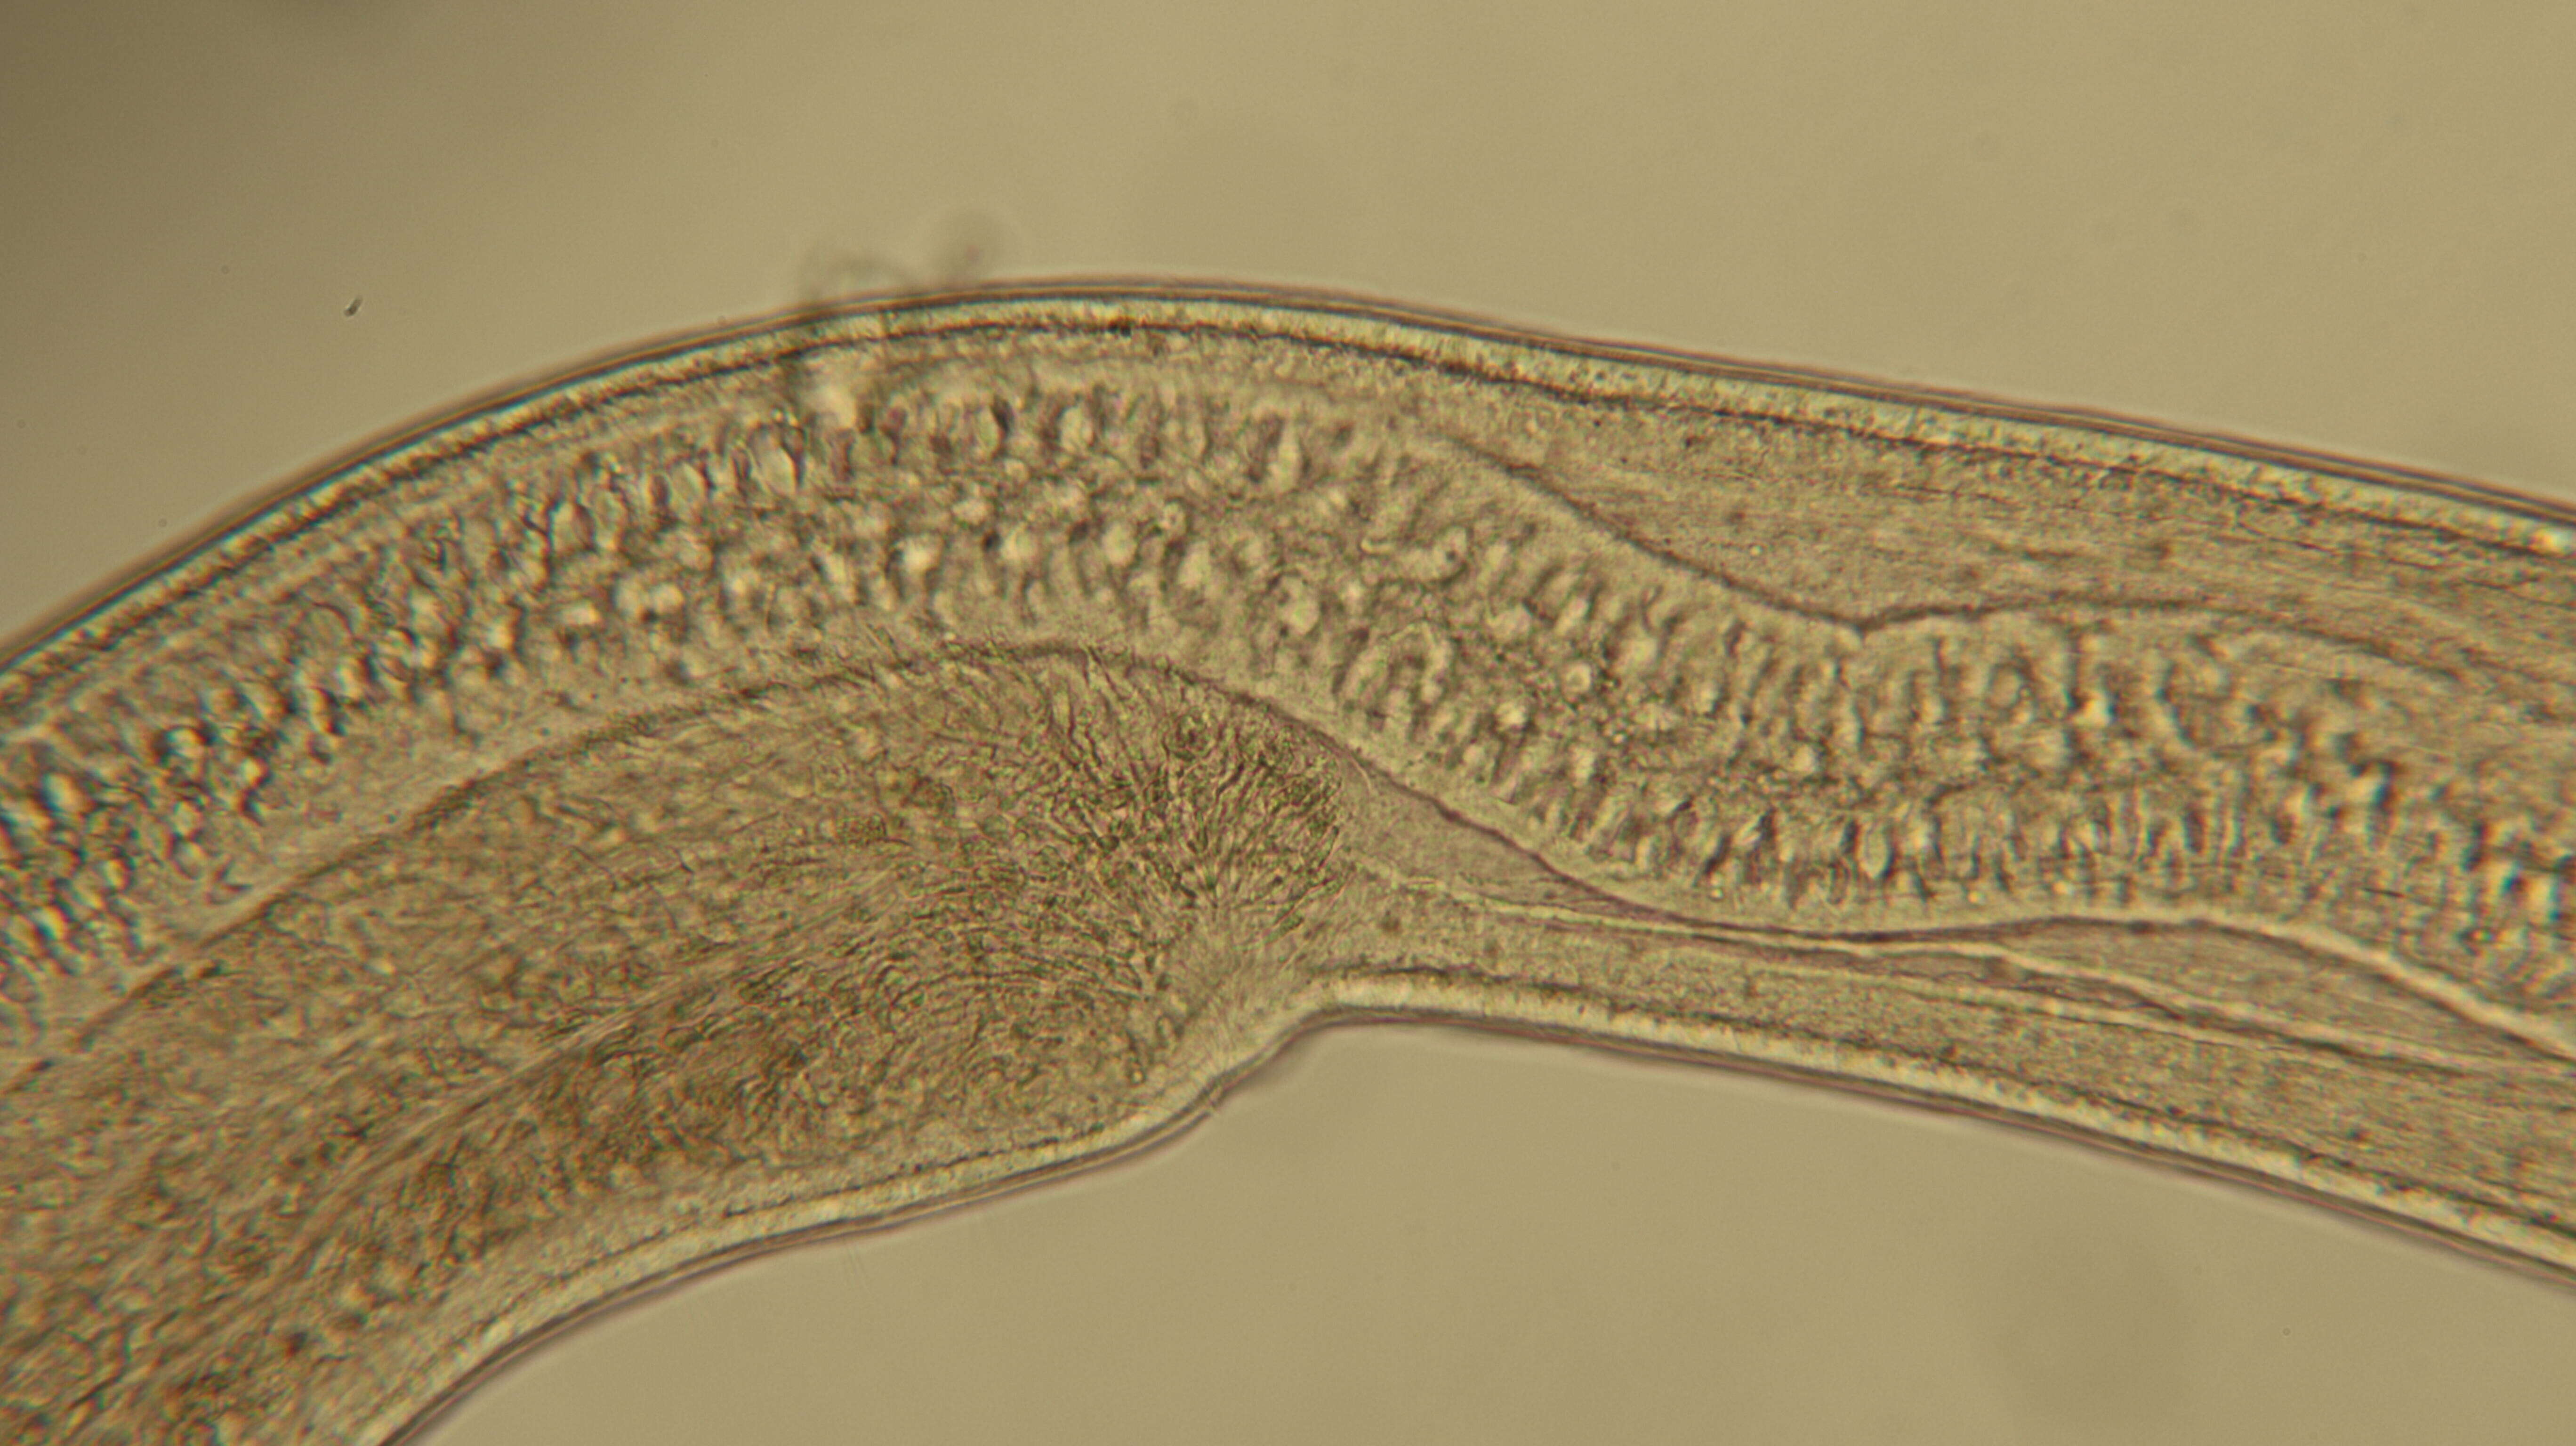 Image of Cephalothricidae